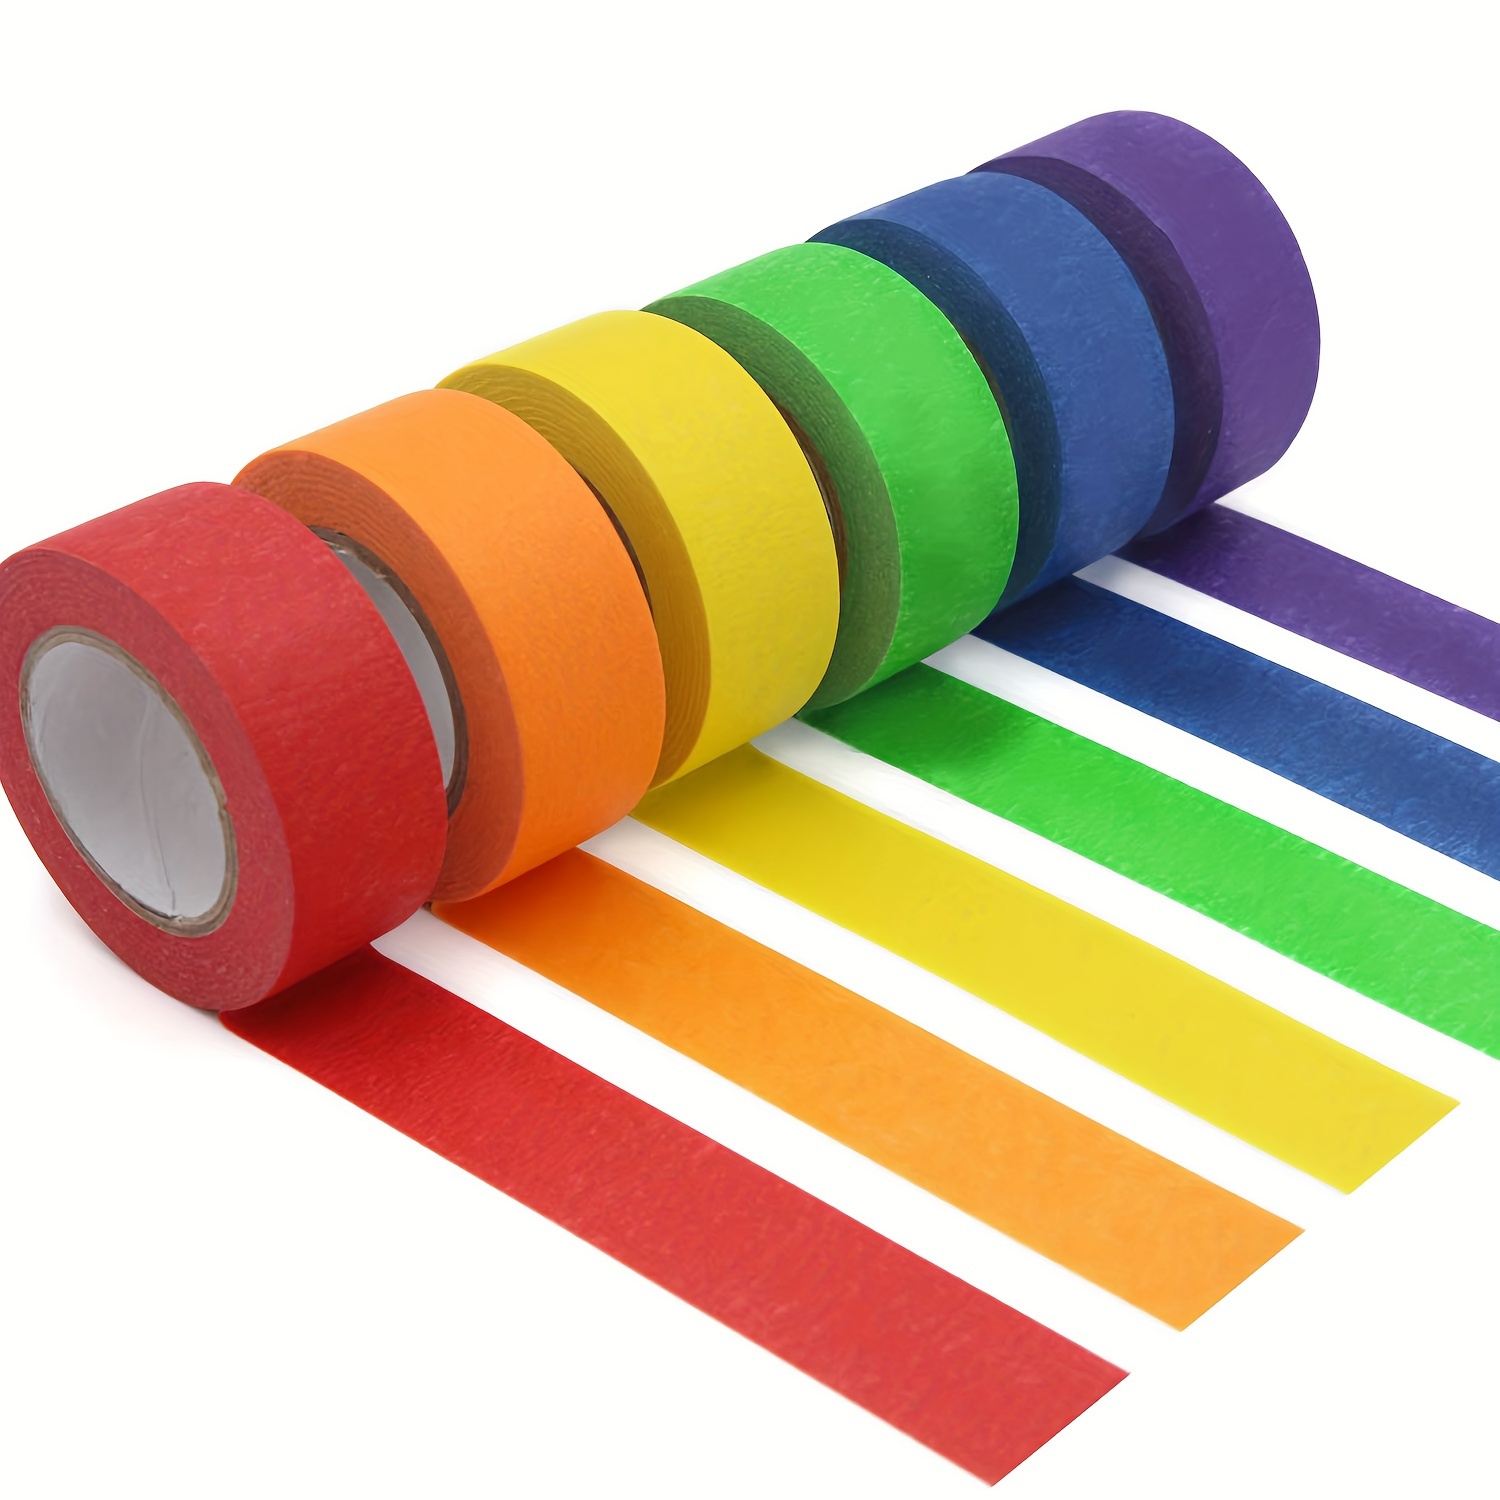 Cinta adhesiva de color de 1/2 pulgada, paquete de 12 cintas de pintores de  colores para artes y manualidades, cinta de artista, cinta de papel, cinta